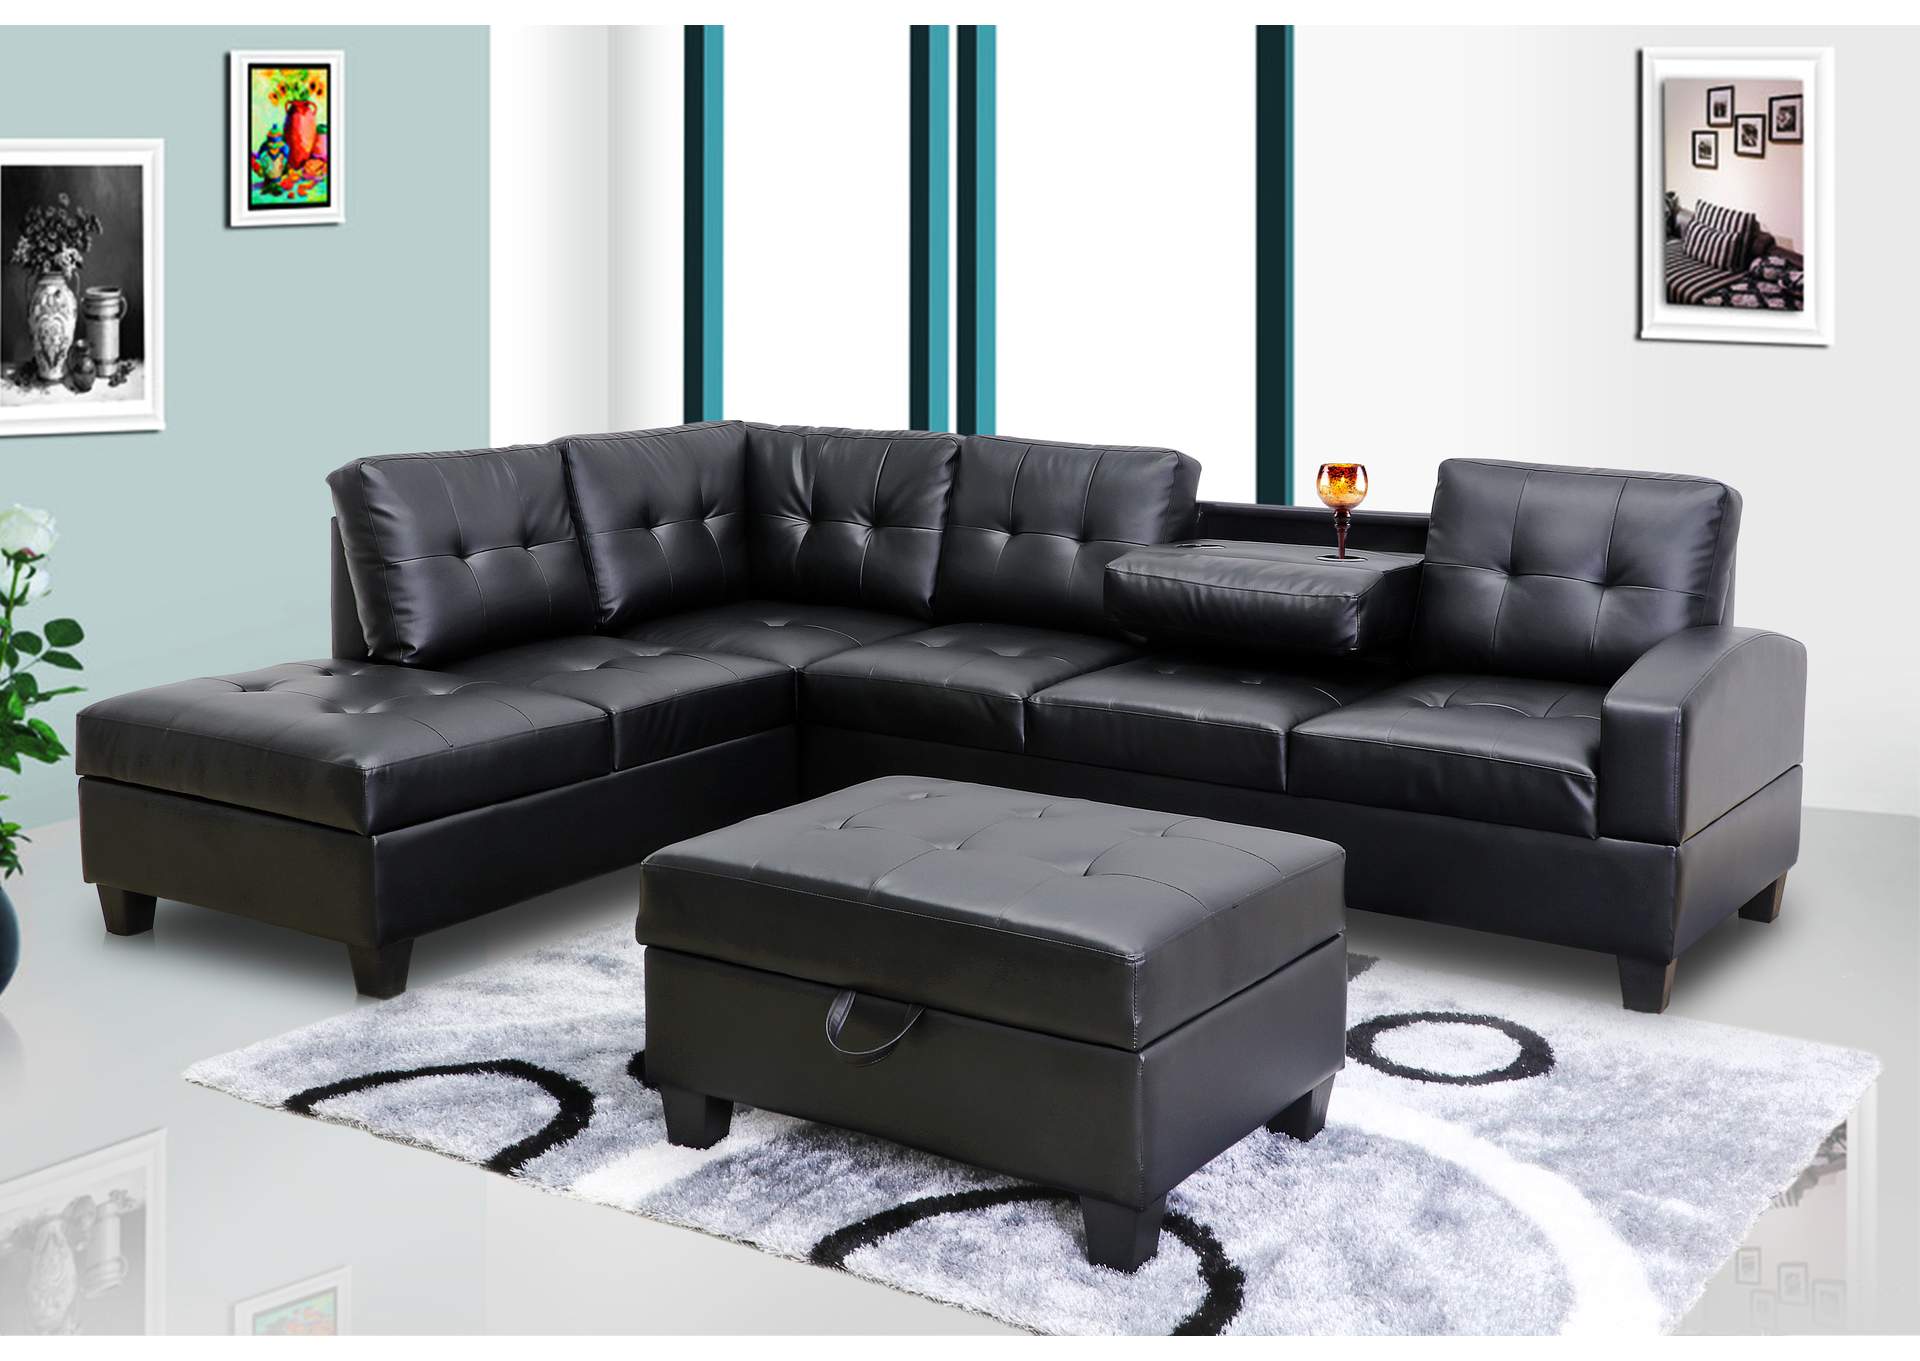 U5400 Black Sectional Sofa,Global Trading